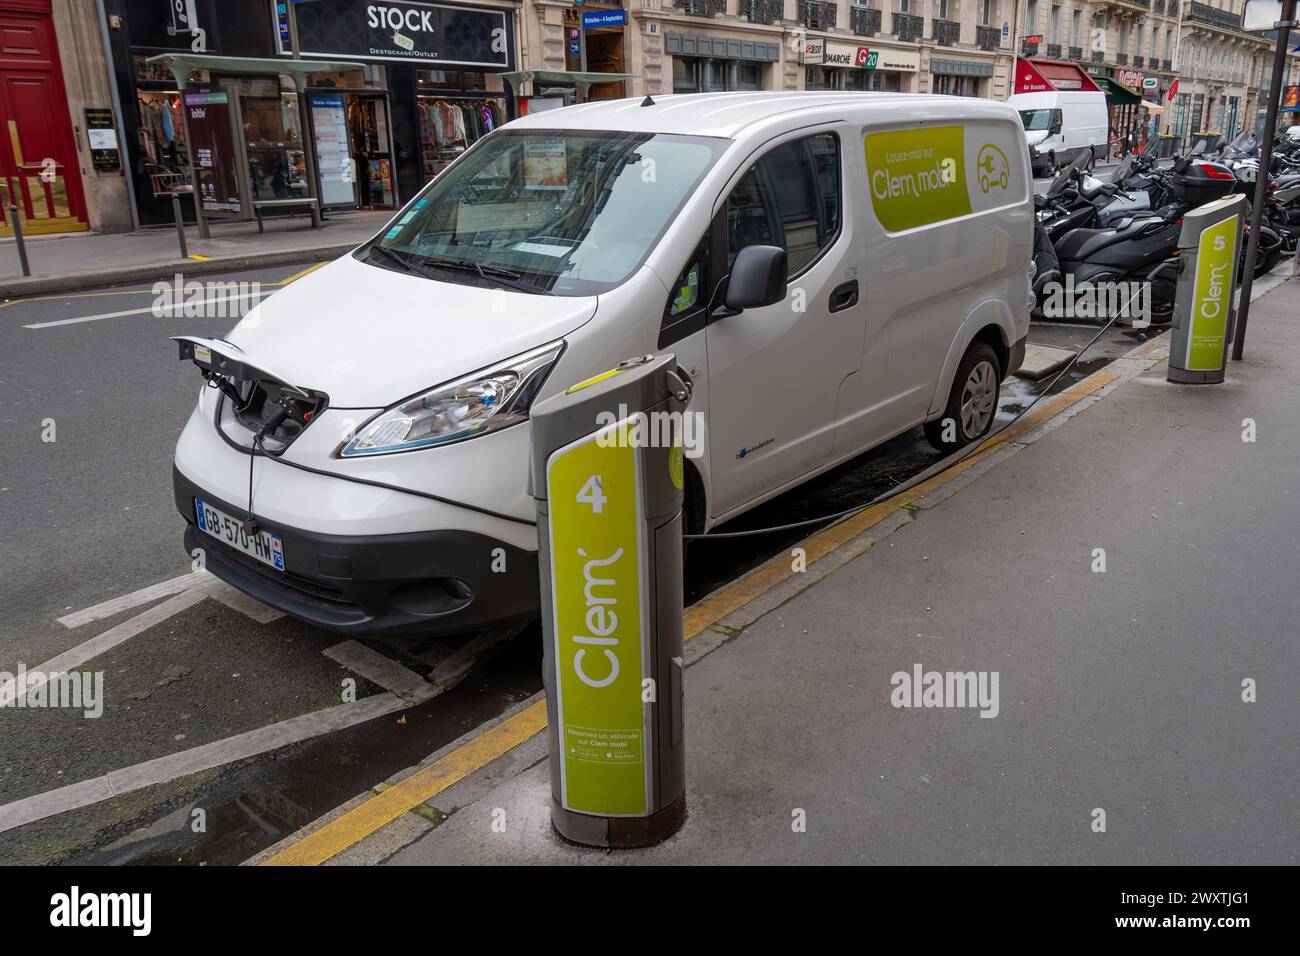 Borne de recharge de la société française Clem' chargeant un véhicule électrique utilitaire d'autopartage dans une rue de Paris, France Banque D'Images